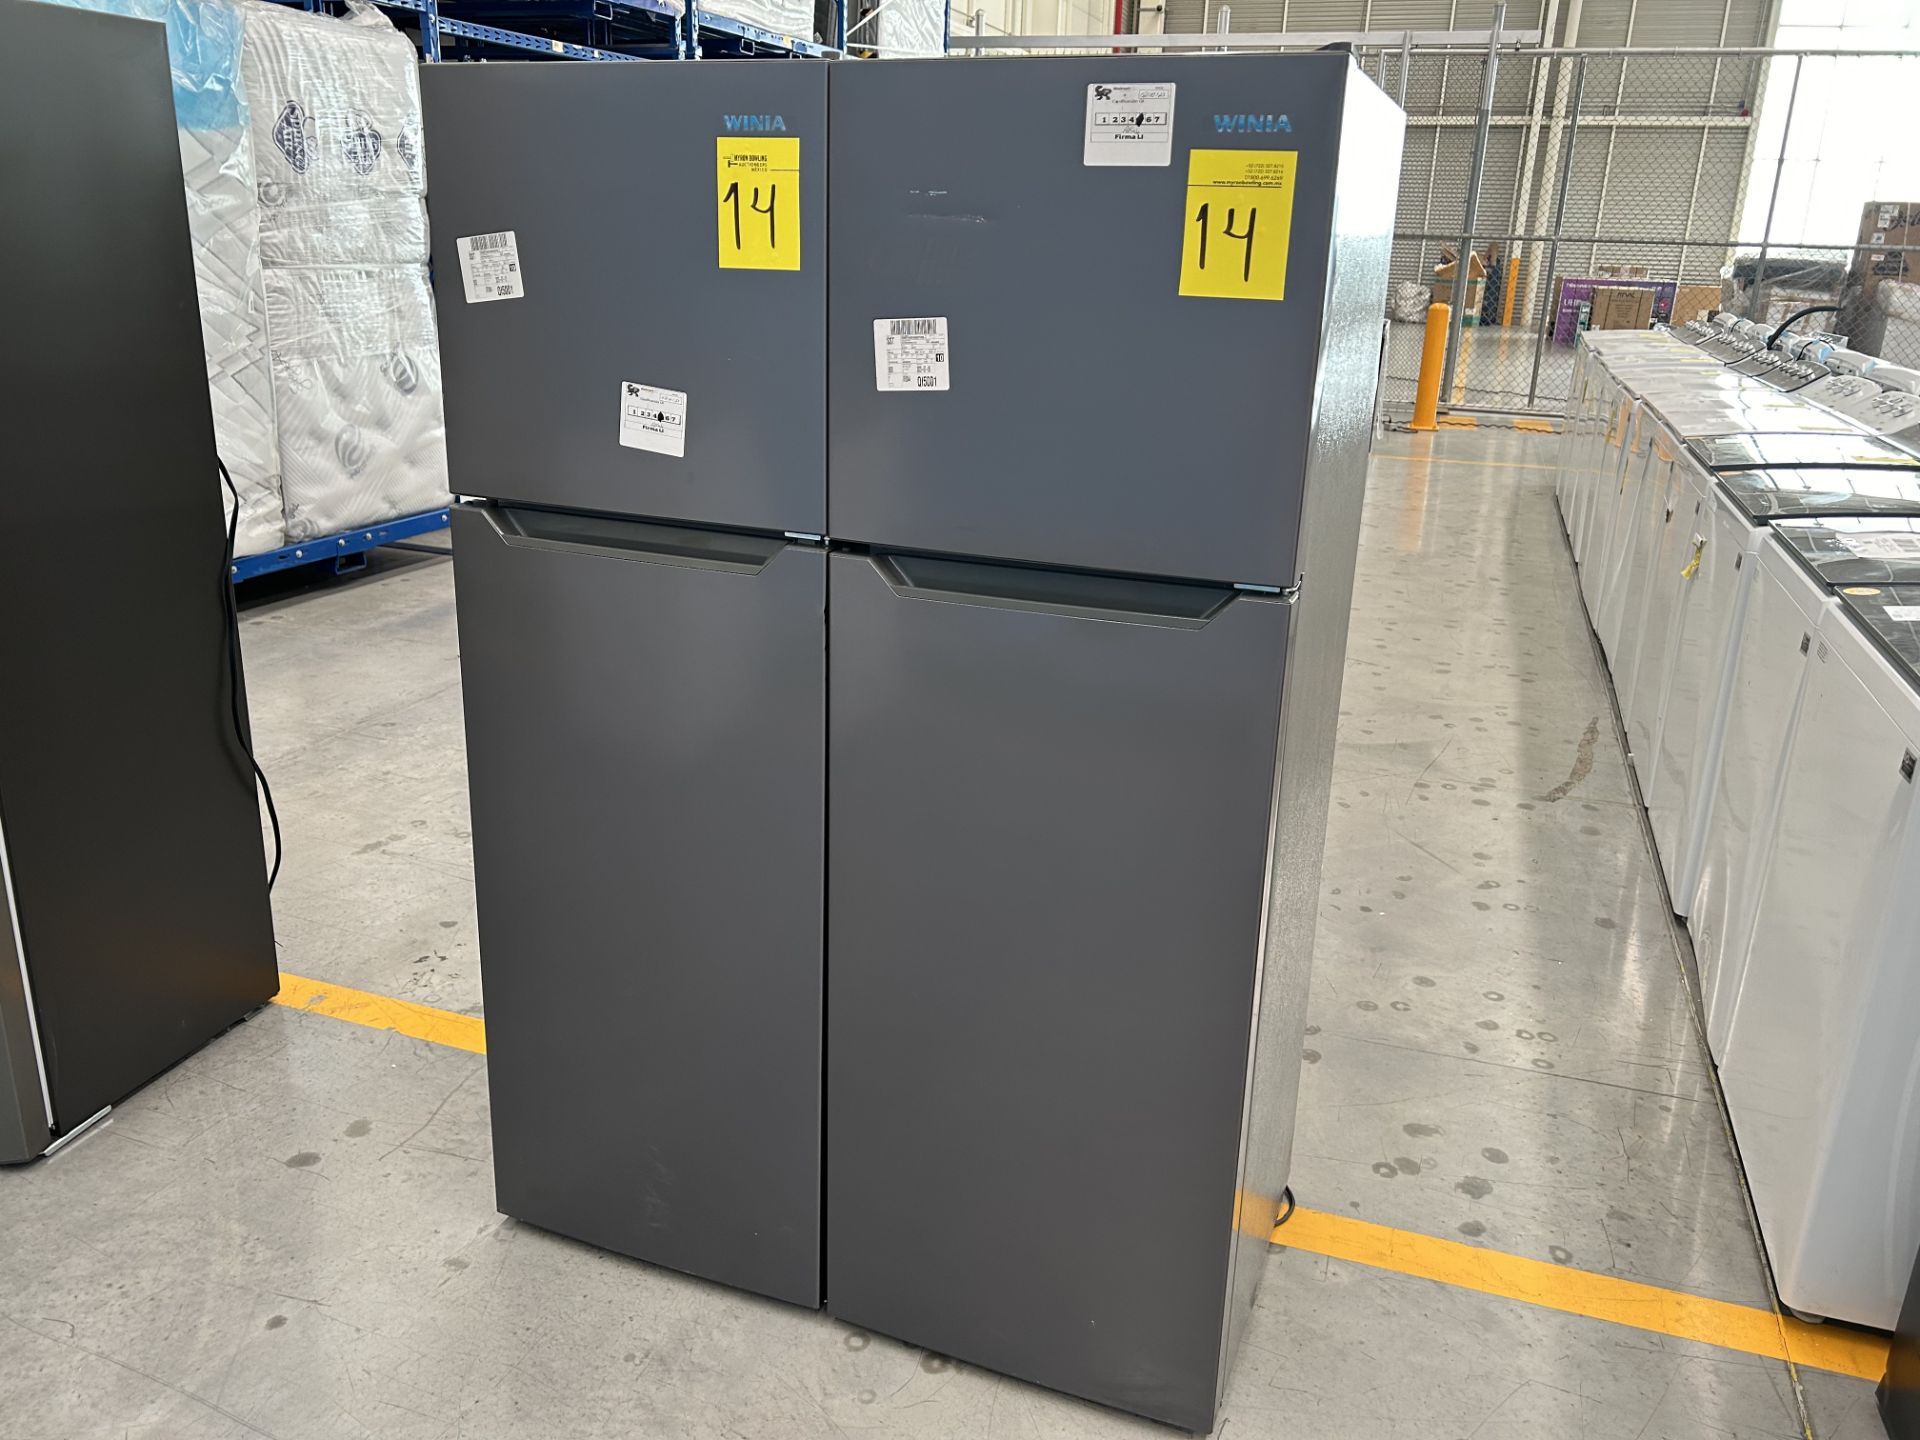 Lote de 2 Refrigeradores contiene: 1 Refrigerador Marca WINIA, Modelo WRT9000AMMX, Serie 012580, Co - Image 3 of 6